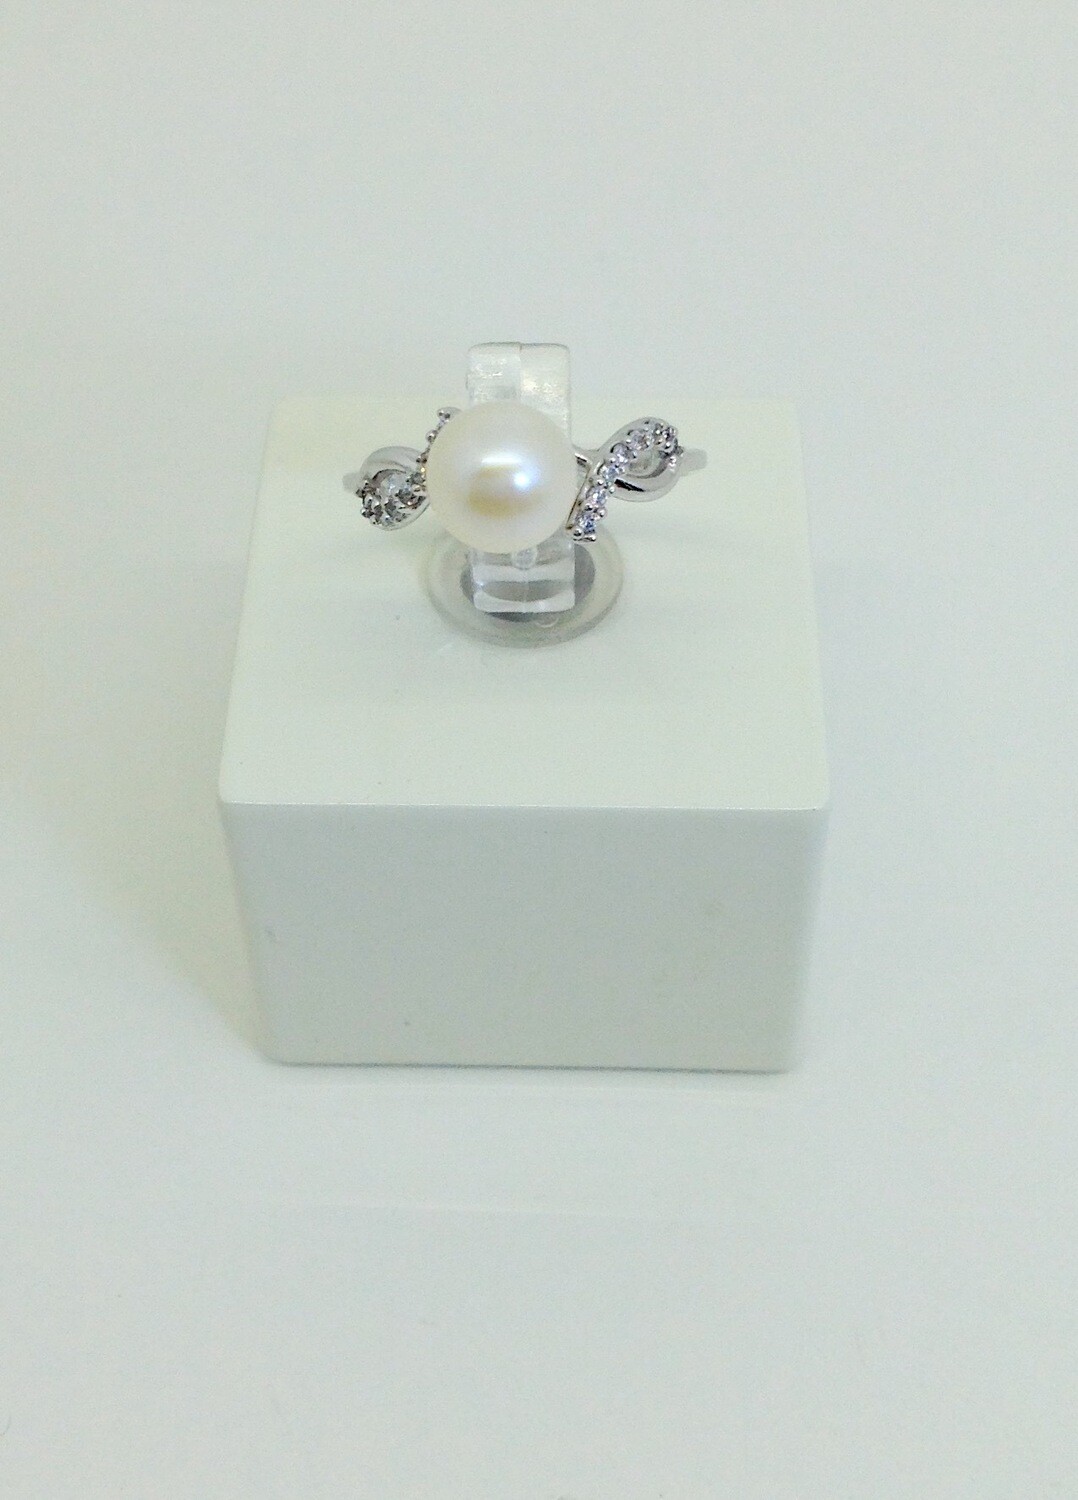 Anello oro bianco con zirconi e perla misura 13 grammi 2.9